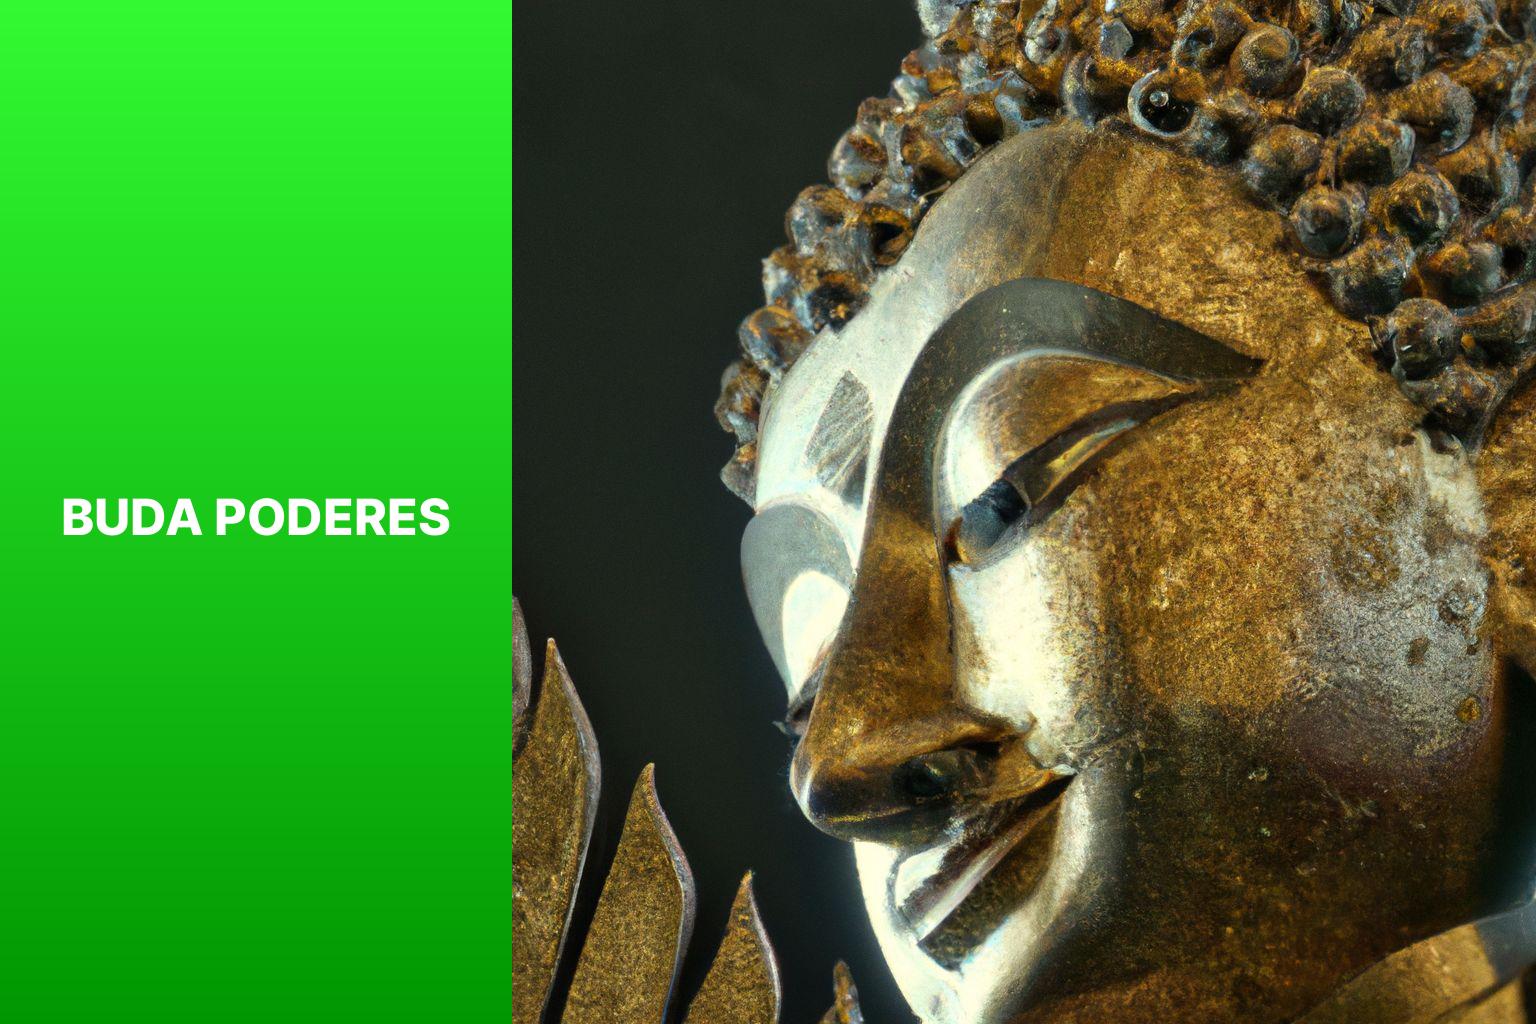 Buda Poderes